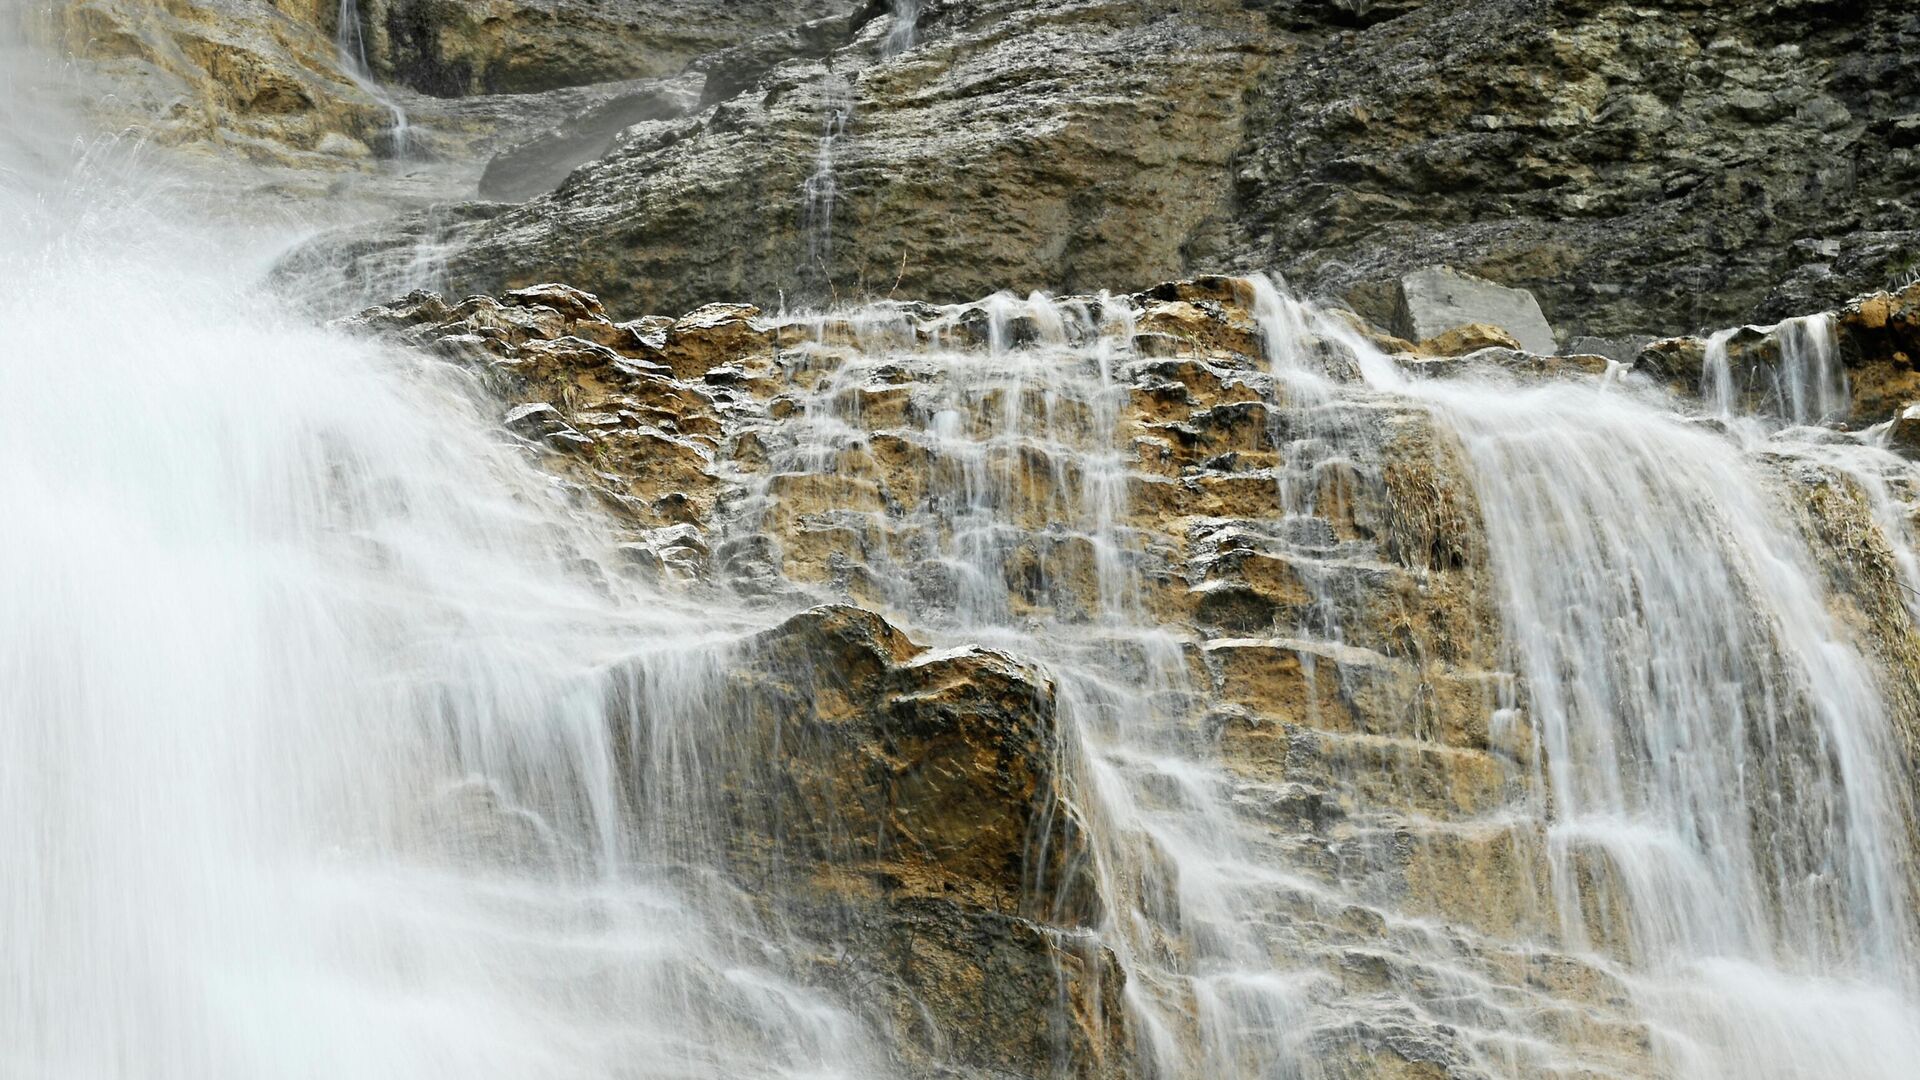 Какова высота водопада в крыму. Водопад Учан-Су летом. Высокий водопад на полуострове Крым. Водопад высотой 30 метров. 3. 4. Самый высокий на юге России водопад Крым.